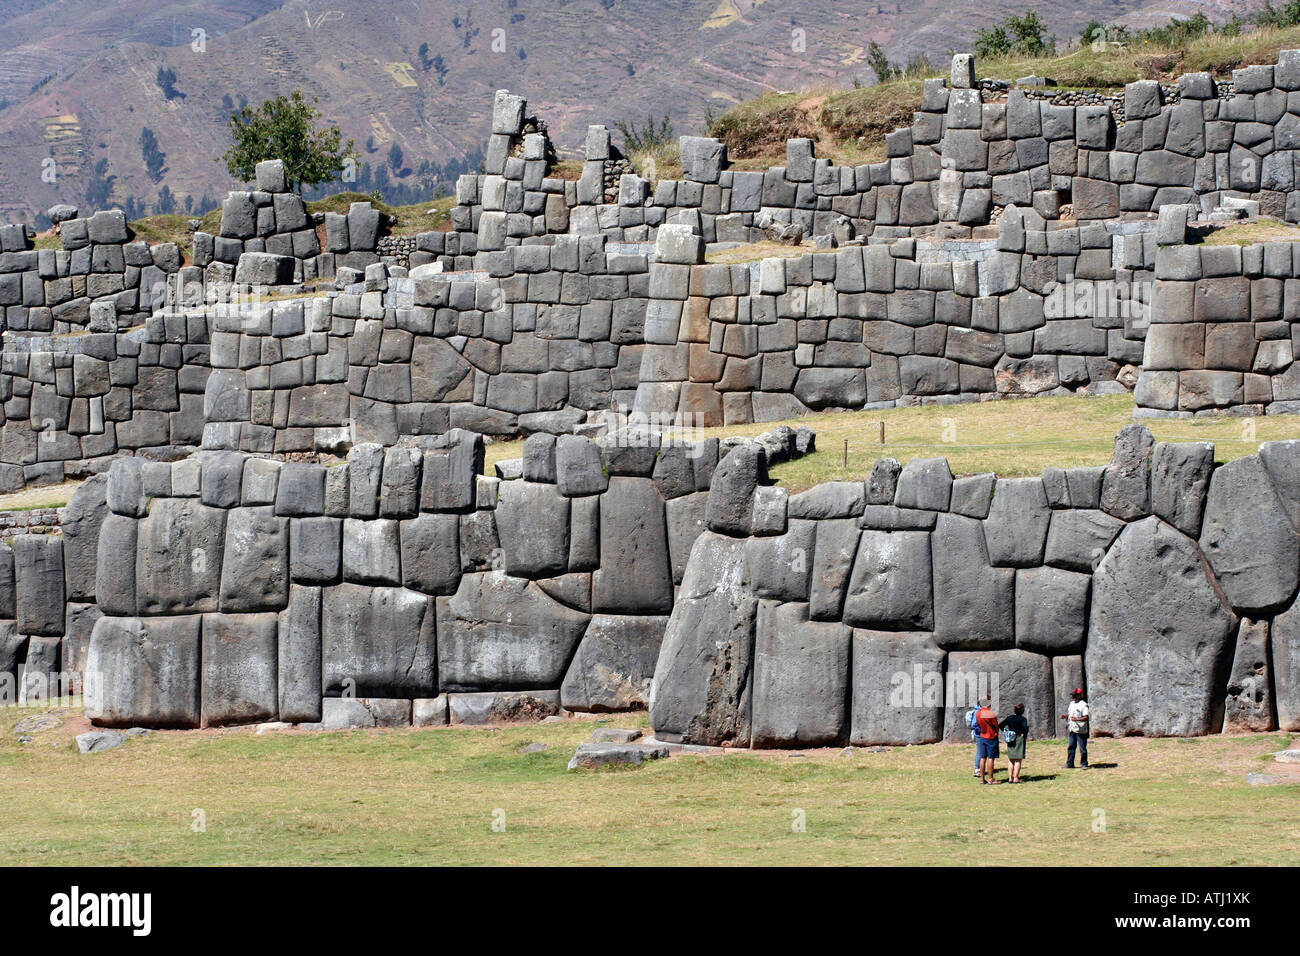 Murs en pierre sculpté Inca au fort militaire des ruines de Sacsayhuaman à Cuzco, Pérou, accueil de l'Inti Raymi festival. Banque D'Images